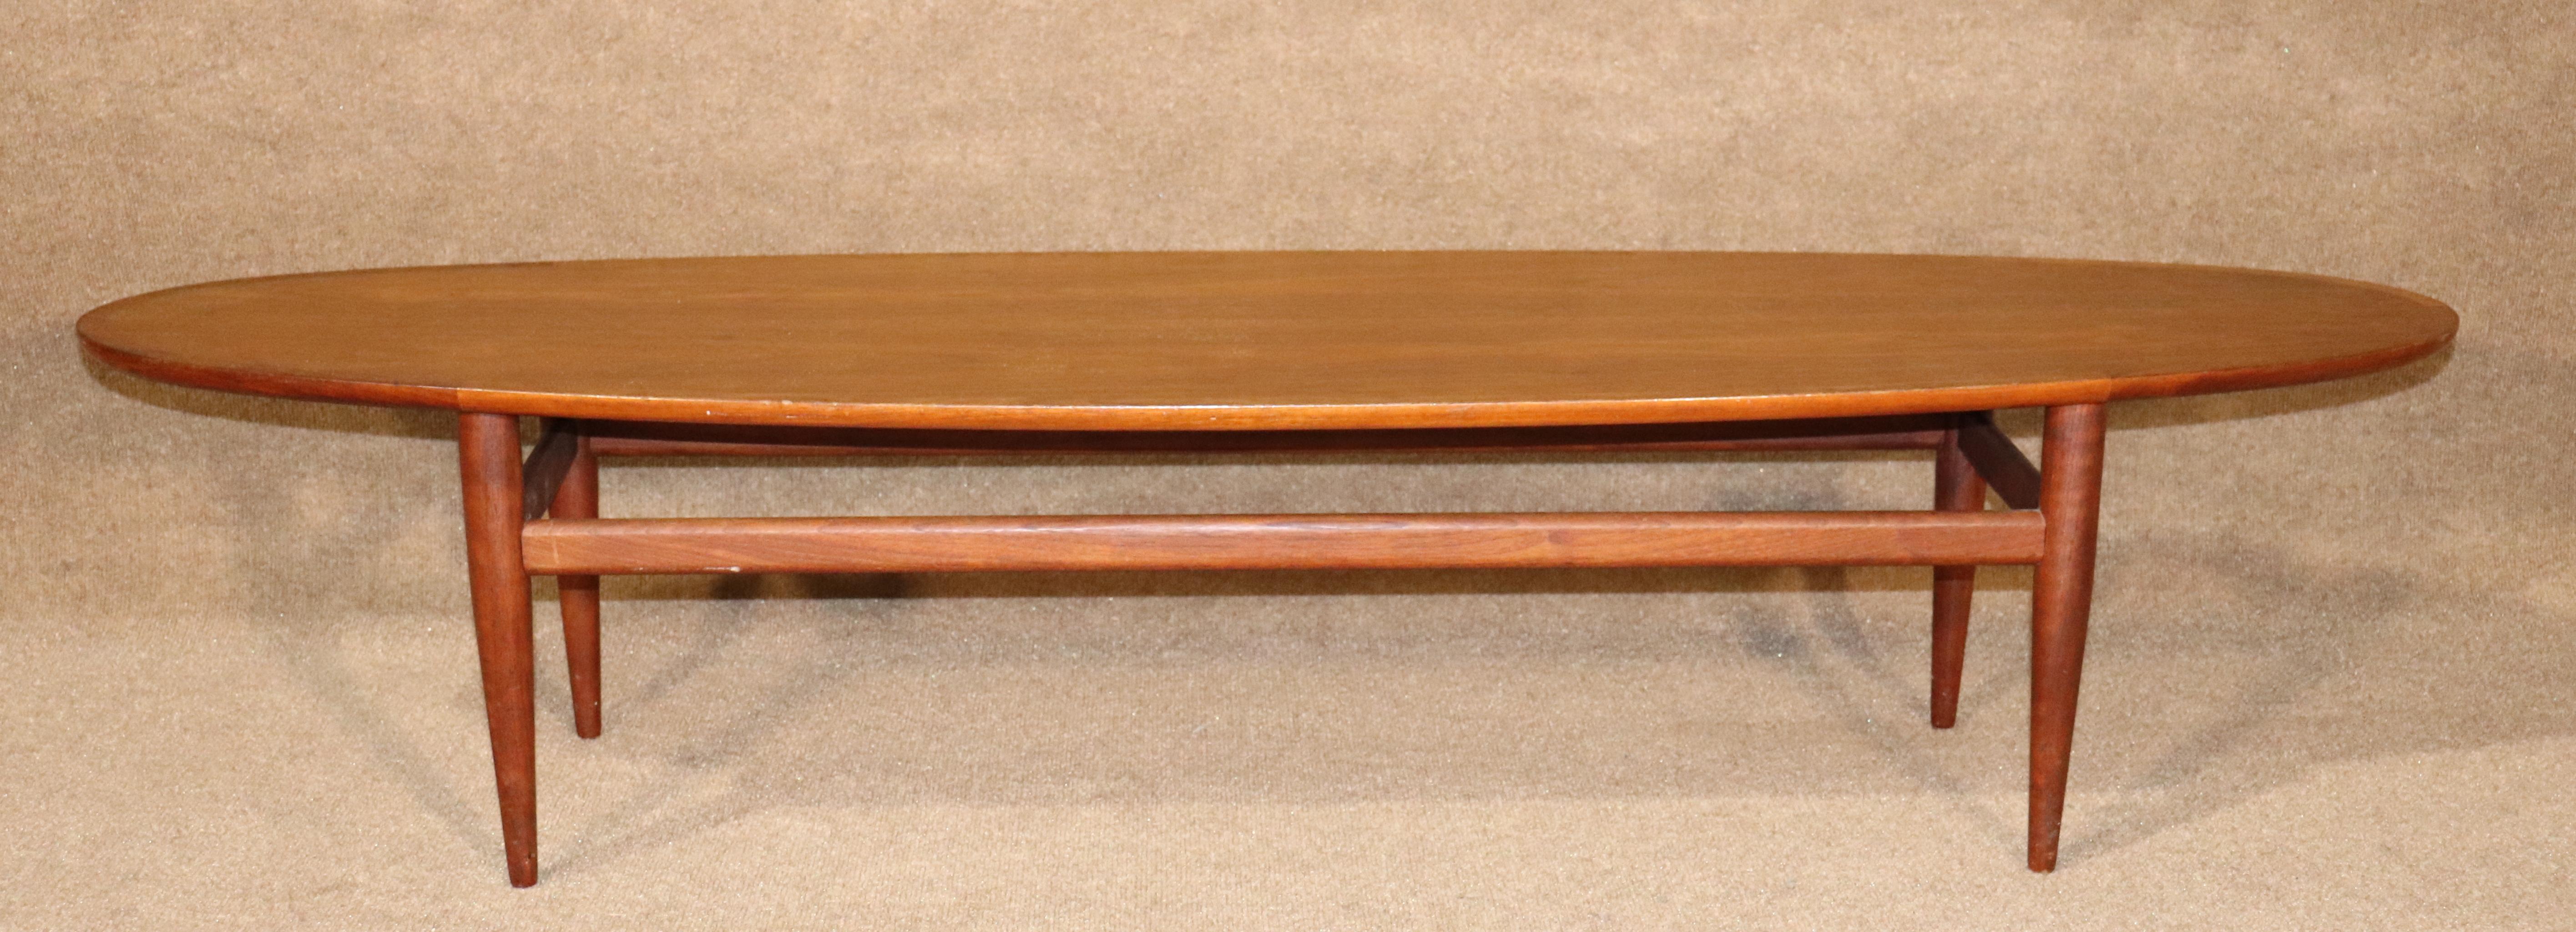 Table basse ovale en forme de planche de surf par Henredon, avec des garnitures en noyer et des pieds fuselés.
Veuillez confirmer l'emplacement.